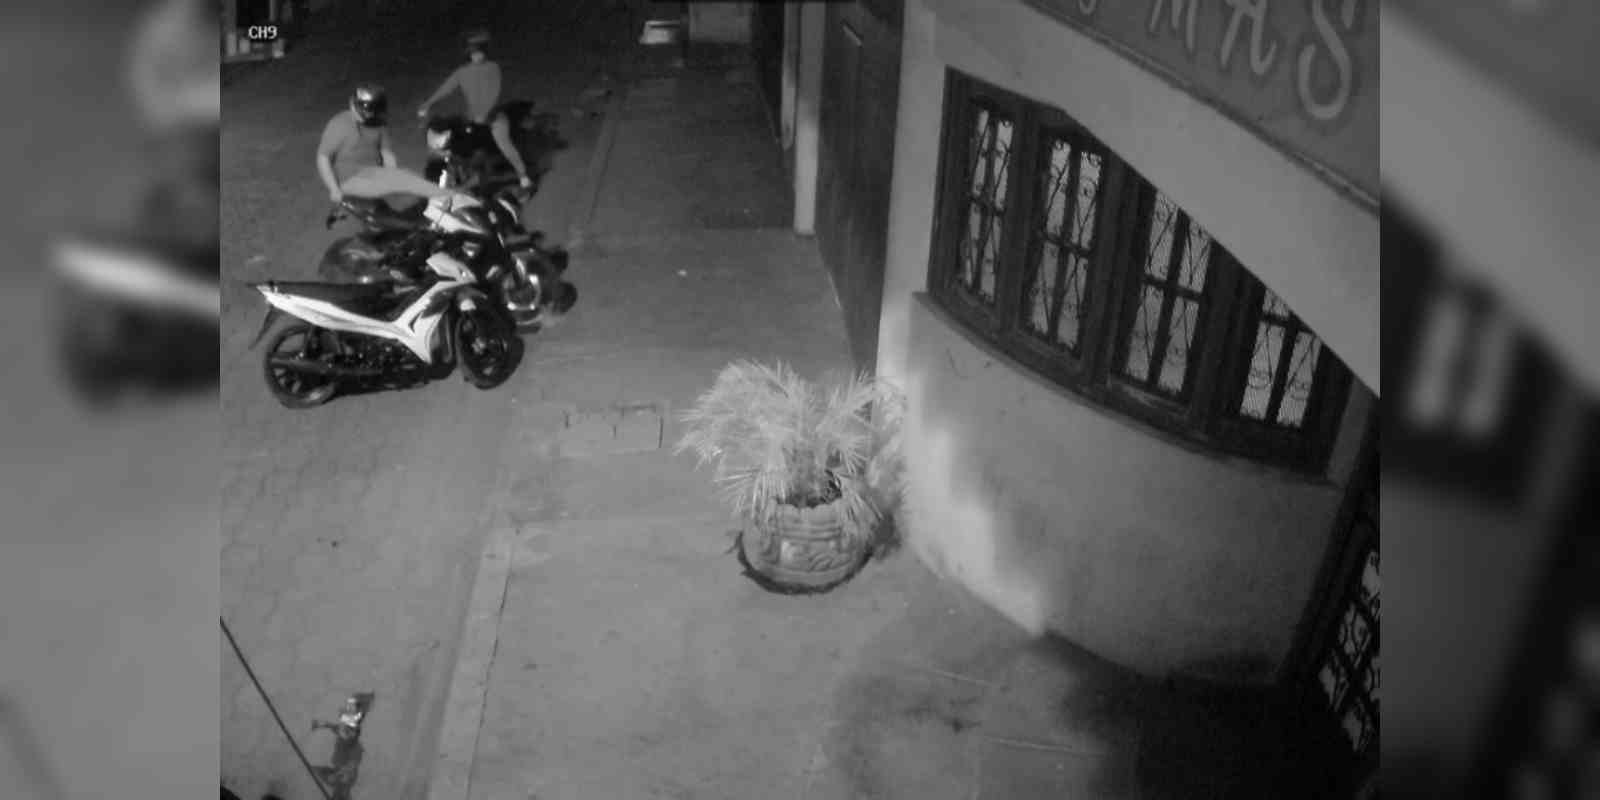 Imagen del robo de una motocicleta en Chinandega, publicada en una denuncia en redes sociales.